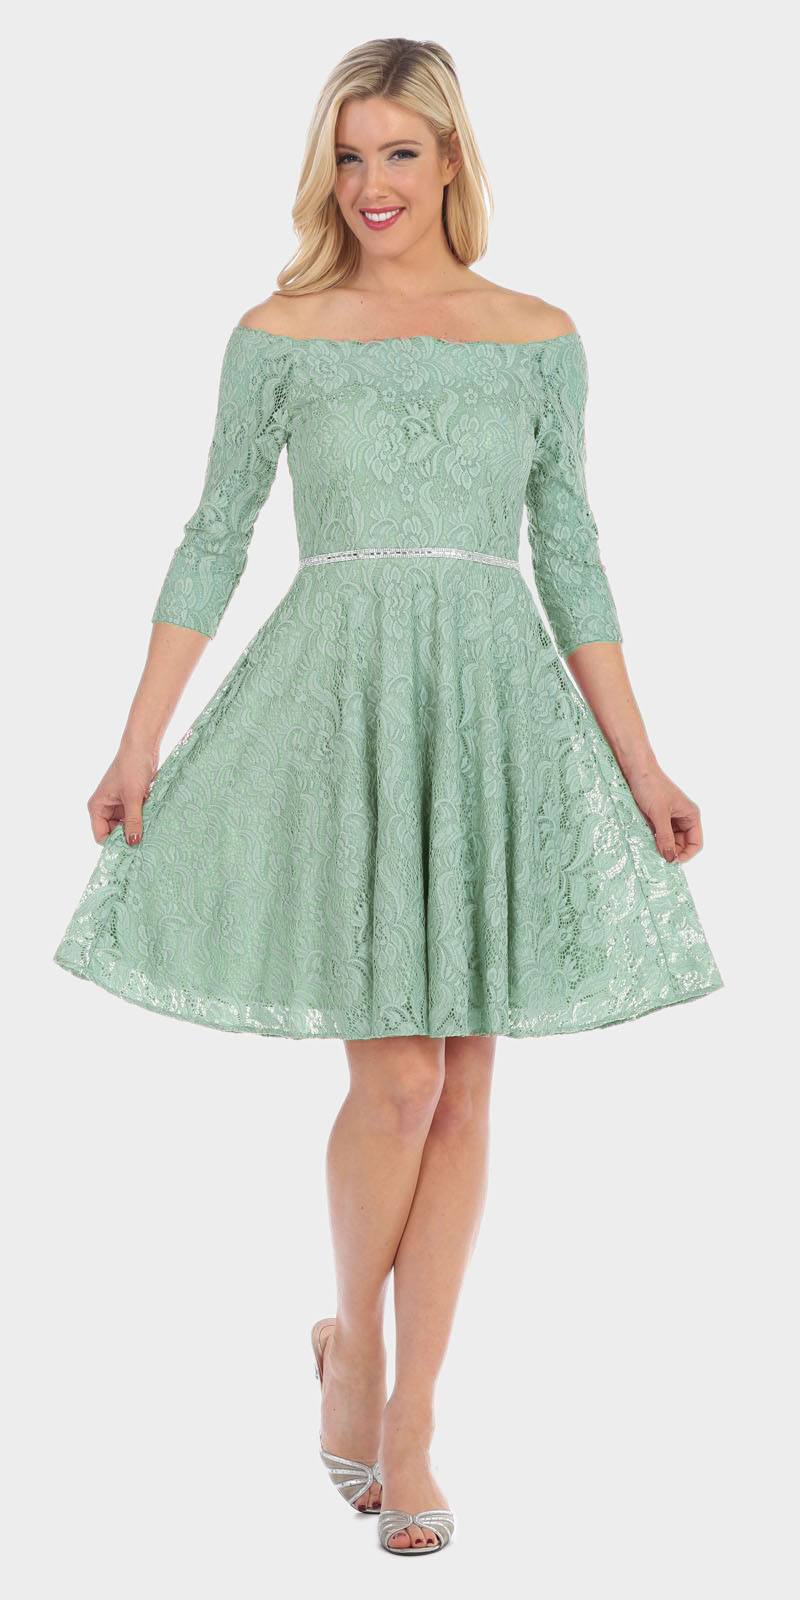 Celavie 6343 Off-the-Shoulder Short Lace Homecoming Dress Sage